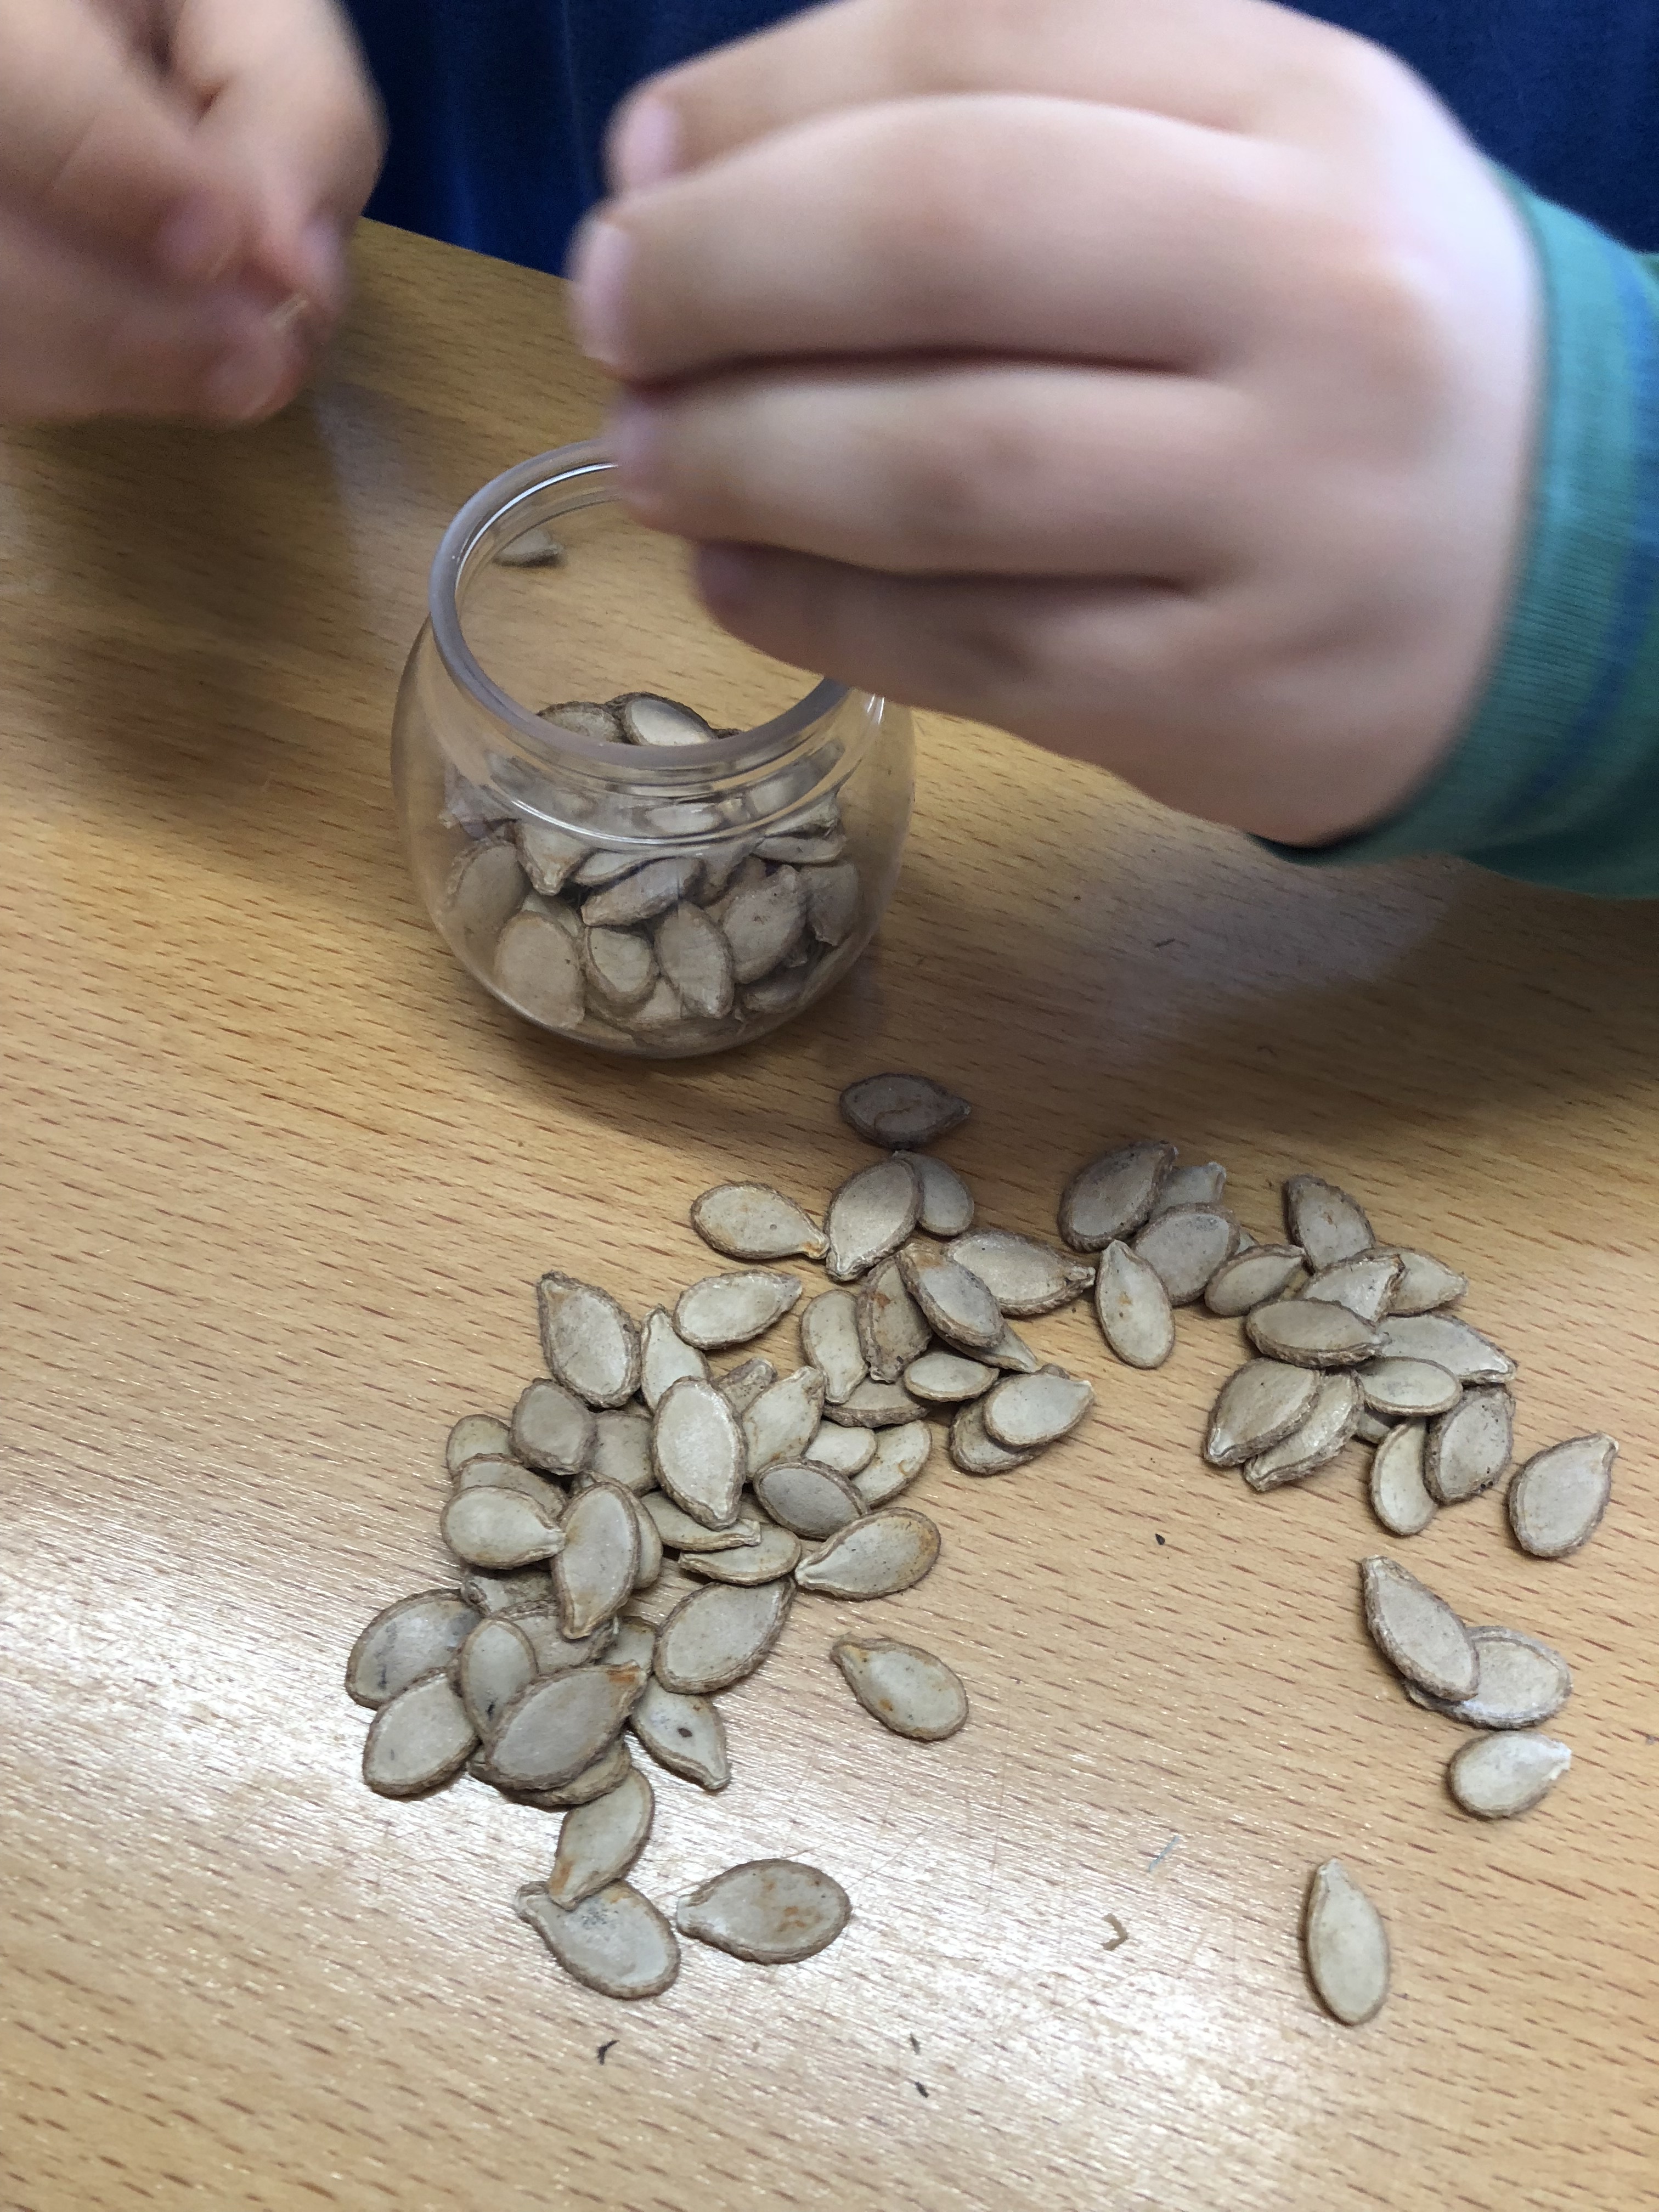 Colocação das sementes no frasco